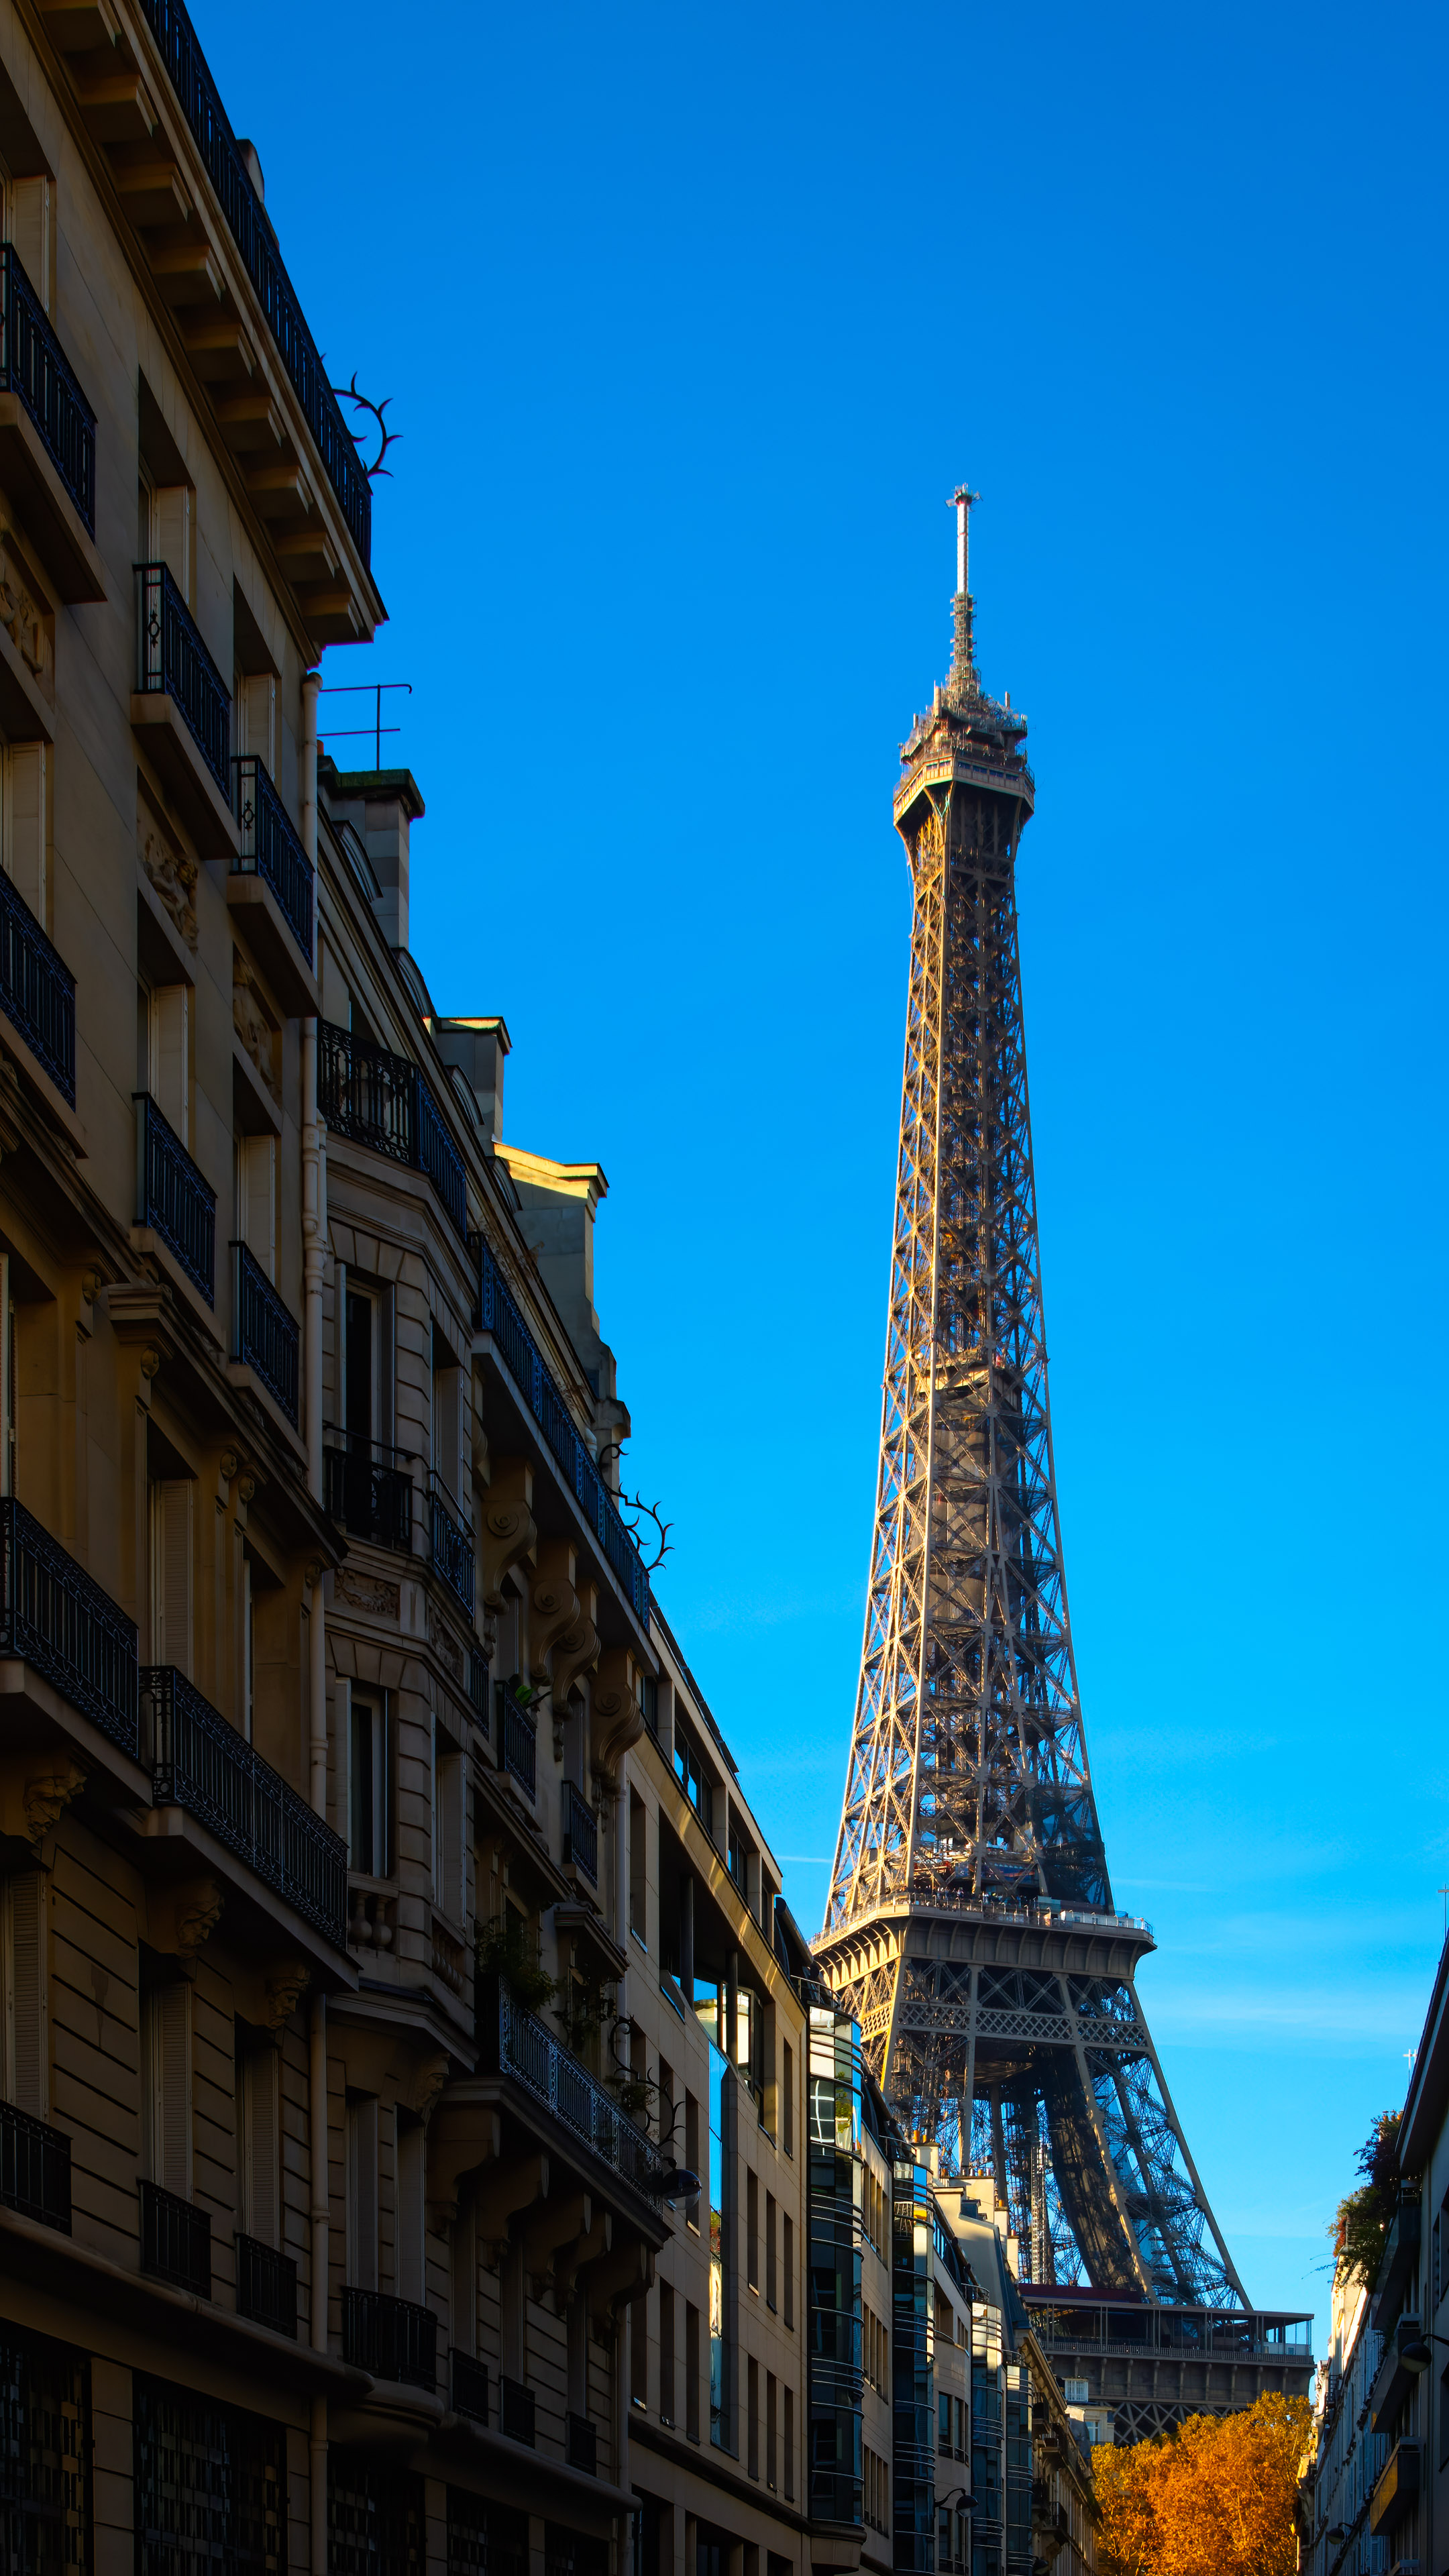 Voyagez au cœur de la France avec notre fond d'écran pour téléphone mettant en vedette la tour Eiffel emblématique de Paris, symbole d'élégance et de romantisme.